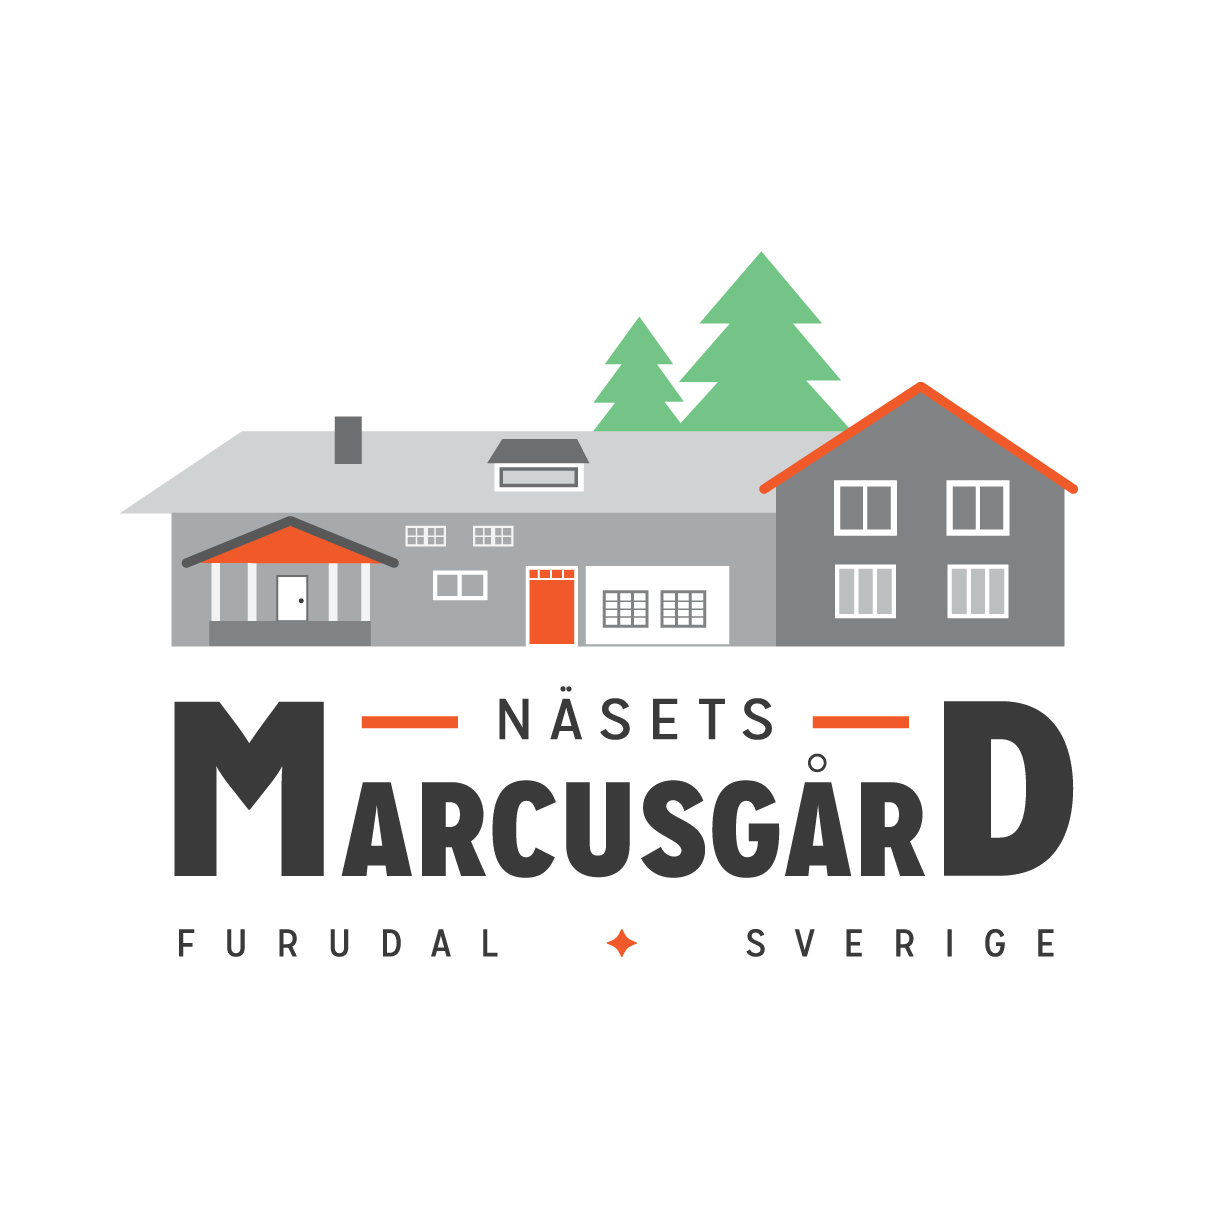 Näsets Marcusgård